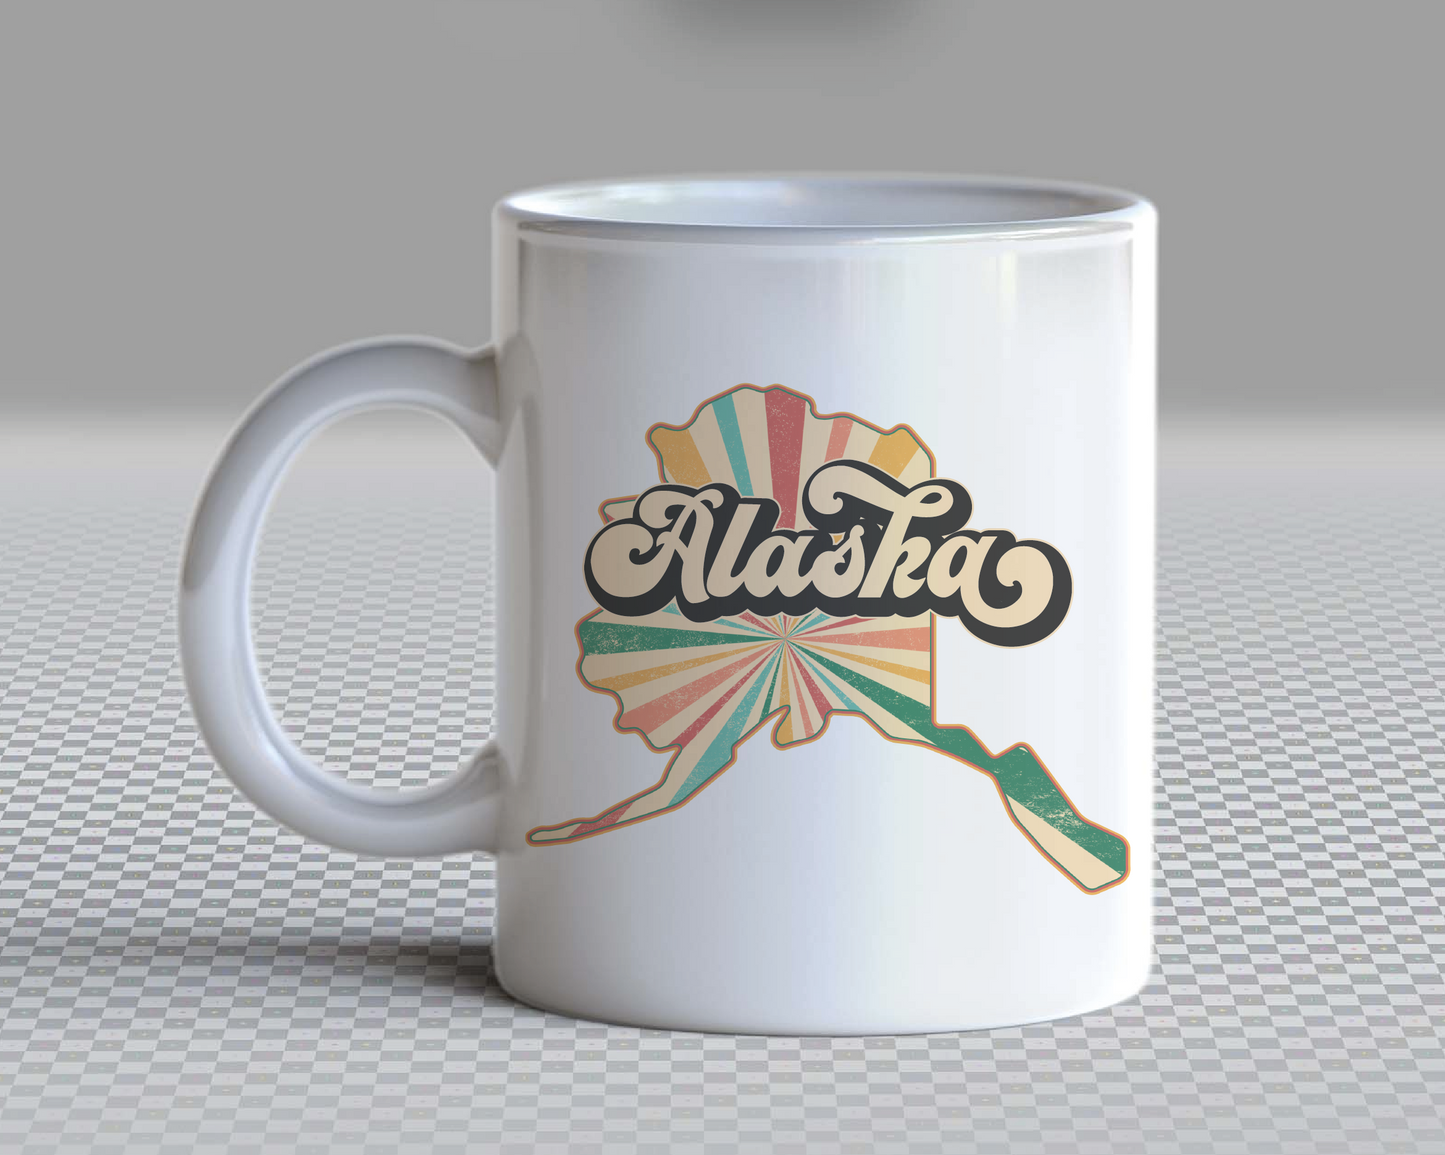 Alaska PNG | Vintage Alaska State Sublimation | Retro Distressed T shirt Design